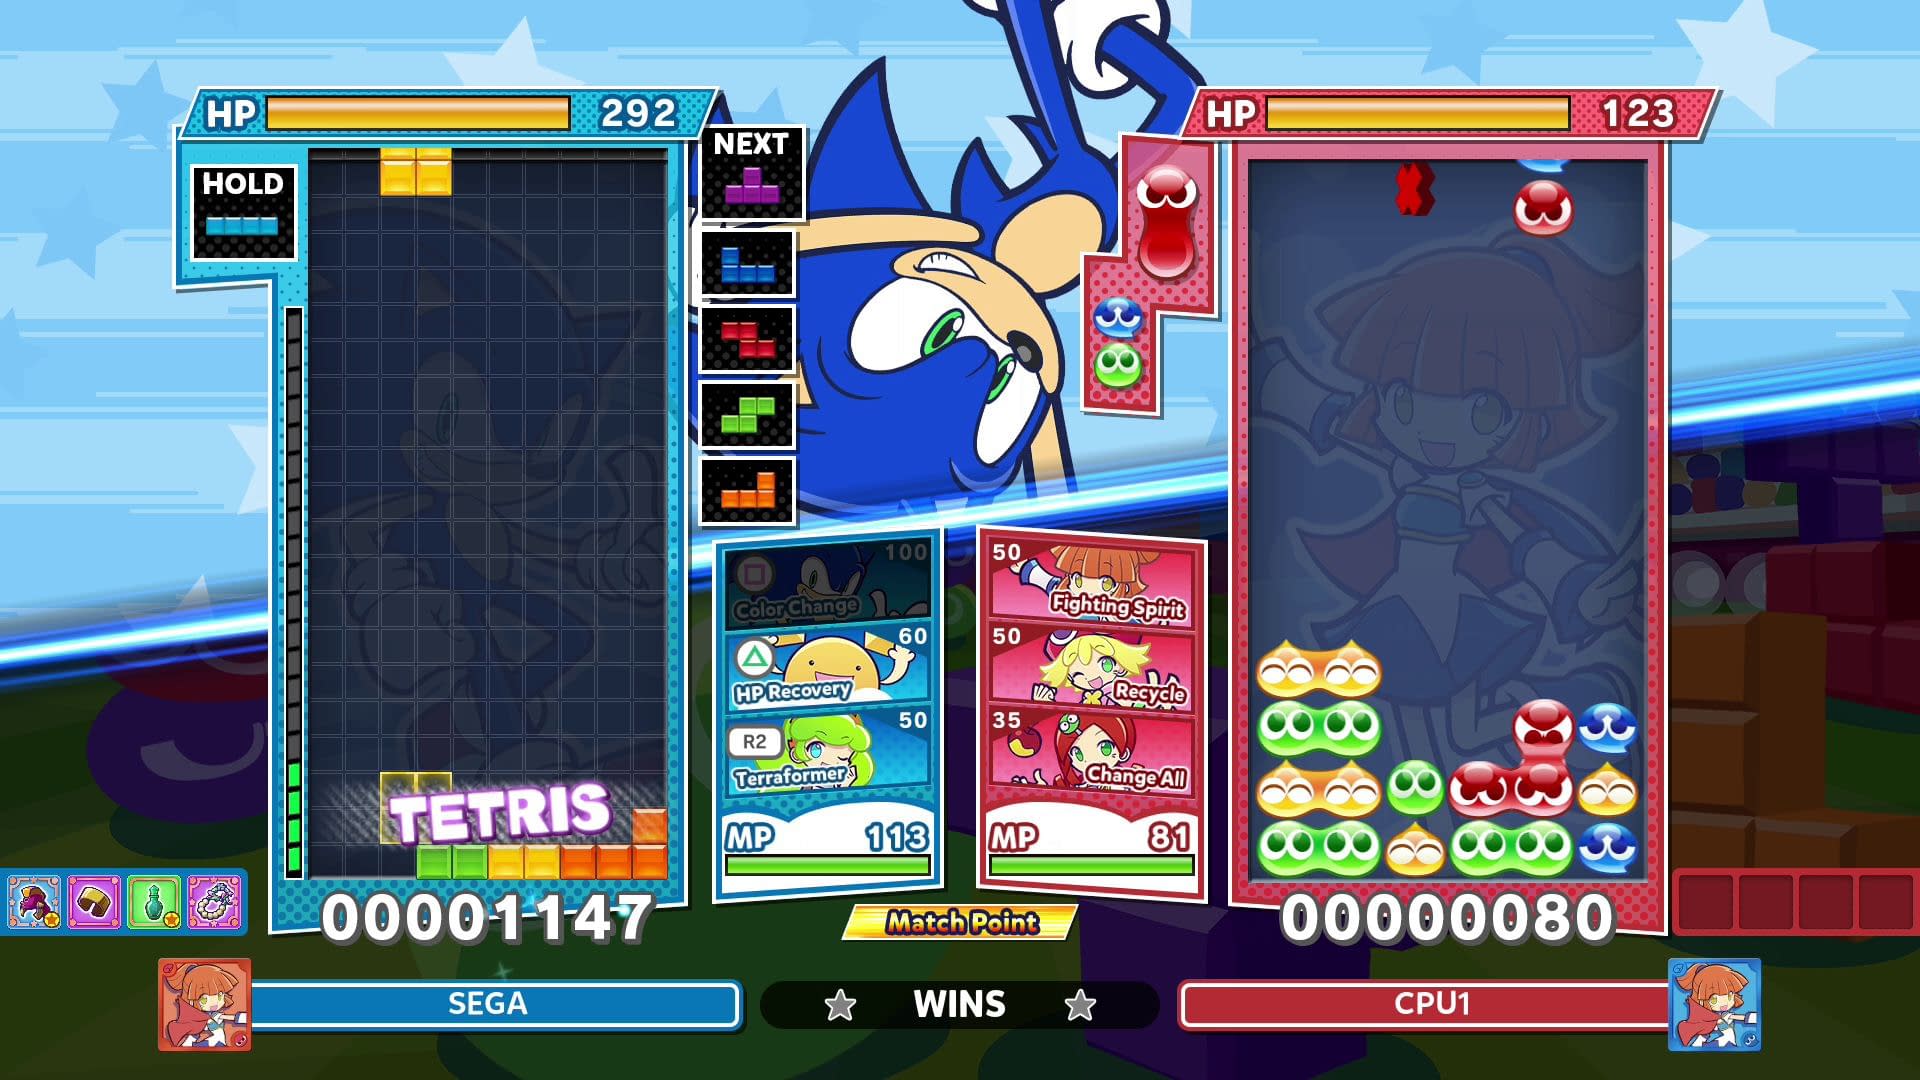 Sonic The Hedgehog đến với Puyo Puyo Tetris 2 mang đến cho người xem trải nghiệm thú vị khi được xem những hình ảnh đầy màu sắc và nét đẹp về hai trò chơi hấp dẫn nhất. Cùng với chú nhím Sonic, bạn sẽ được hòa mình vào thế giới phiêu lưu đầy thú vị và tràn đầy năng lượng tích cực.